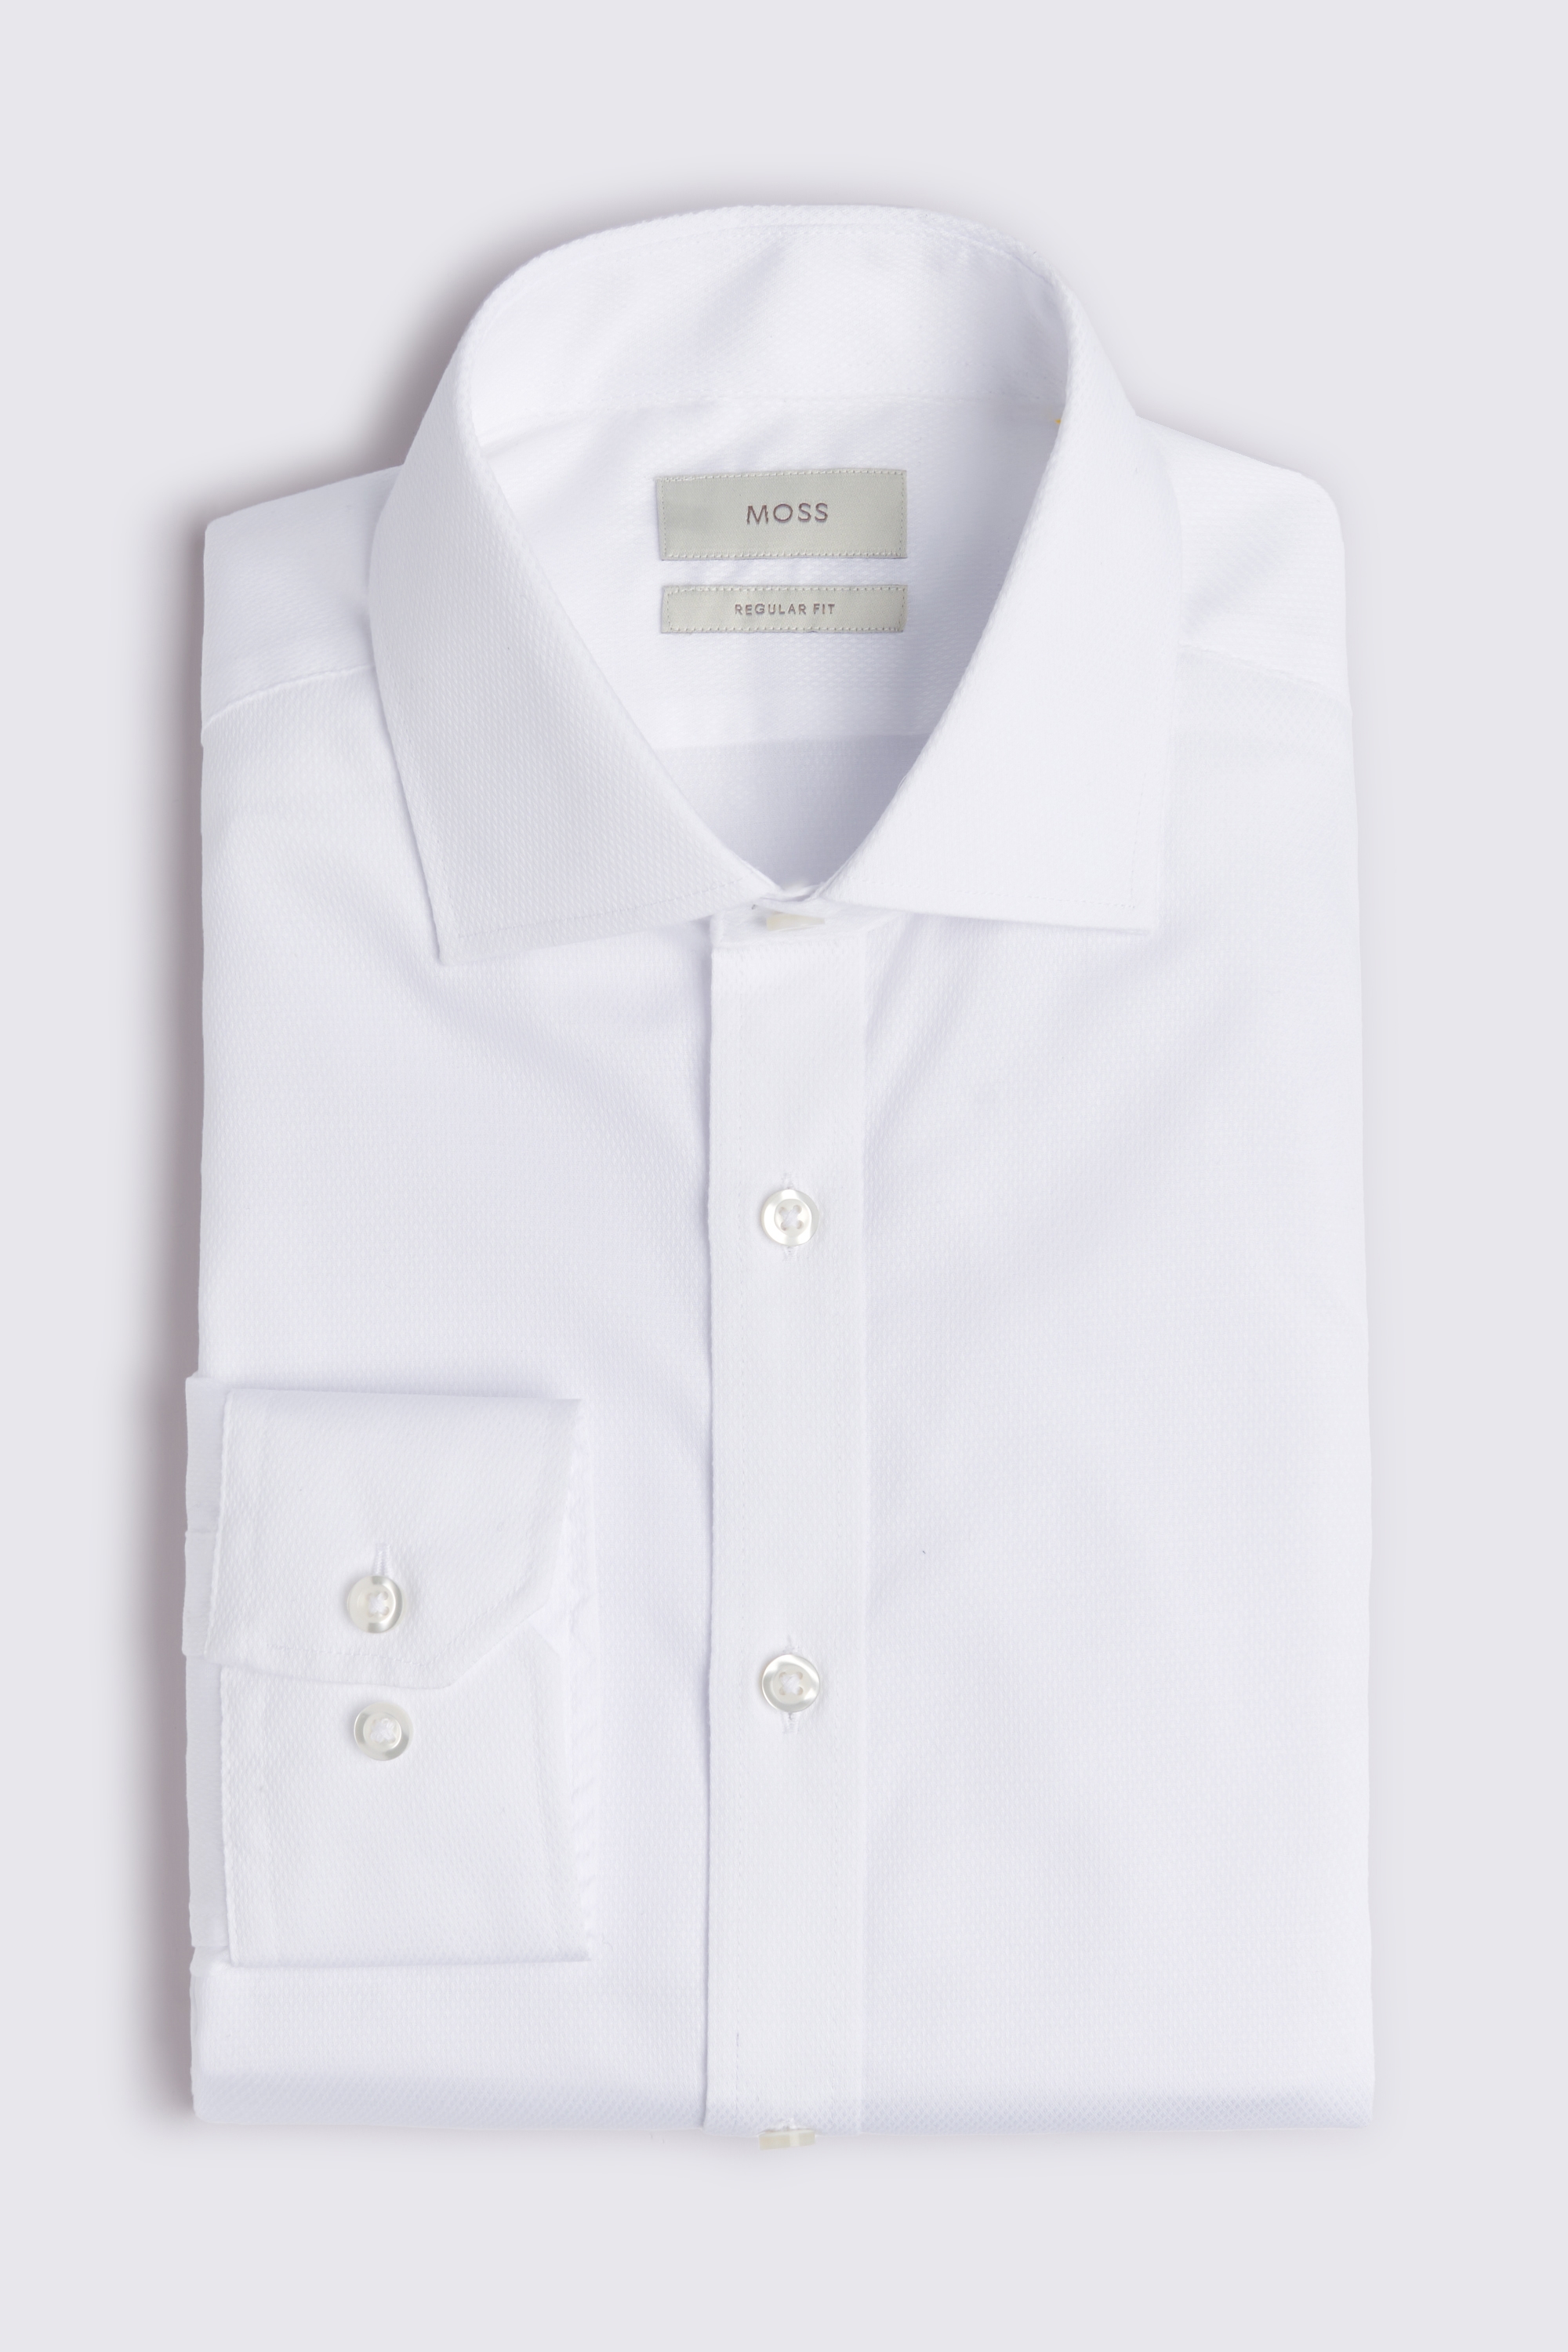 Regular Fit White Dobby Shirt | Buy Online at Moss